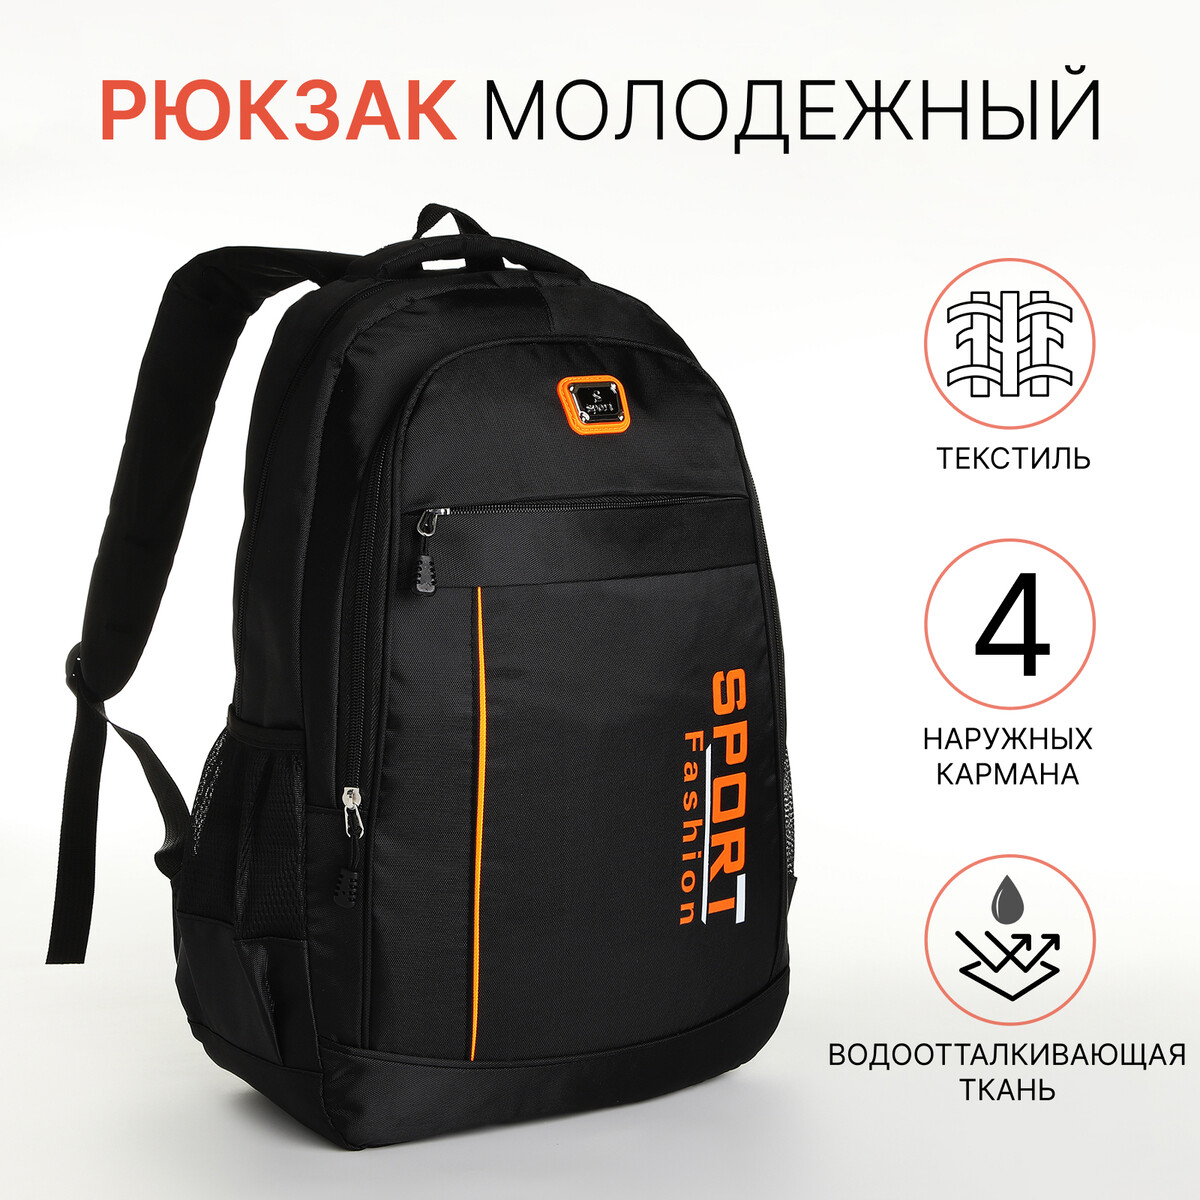 Рюкзак молодежный на молнии, 4 кармана, цвет черный/оранжевый рюкзак школьный из текстиля на молнии 4 кармана кошелек серый оранжевый